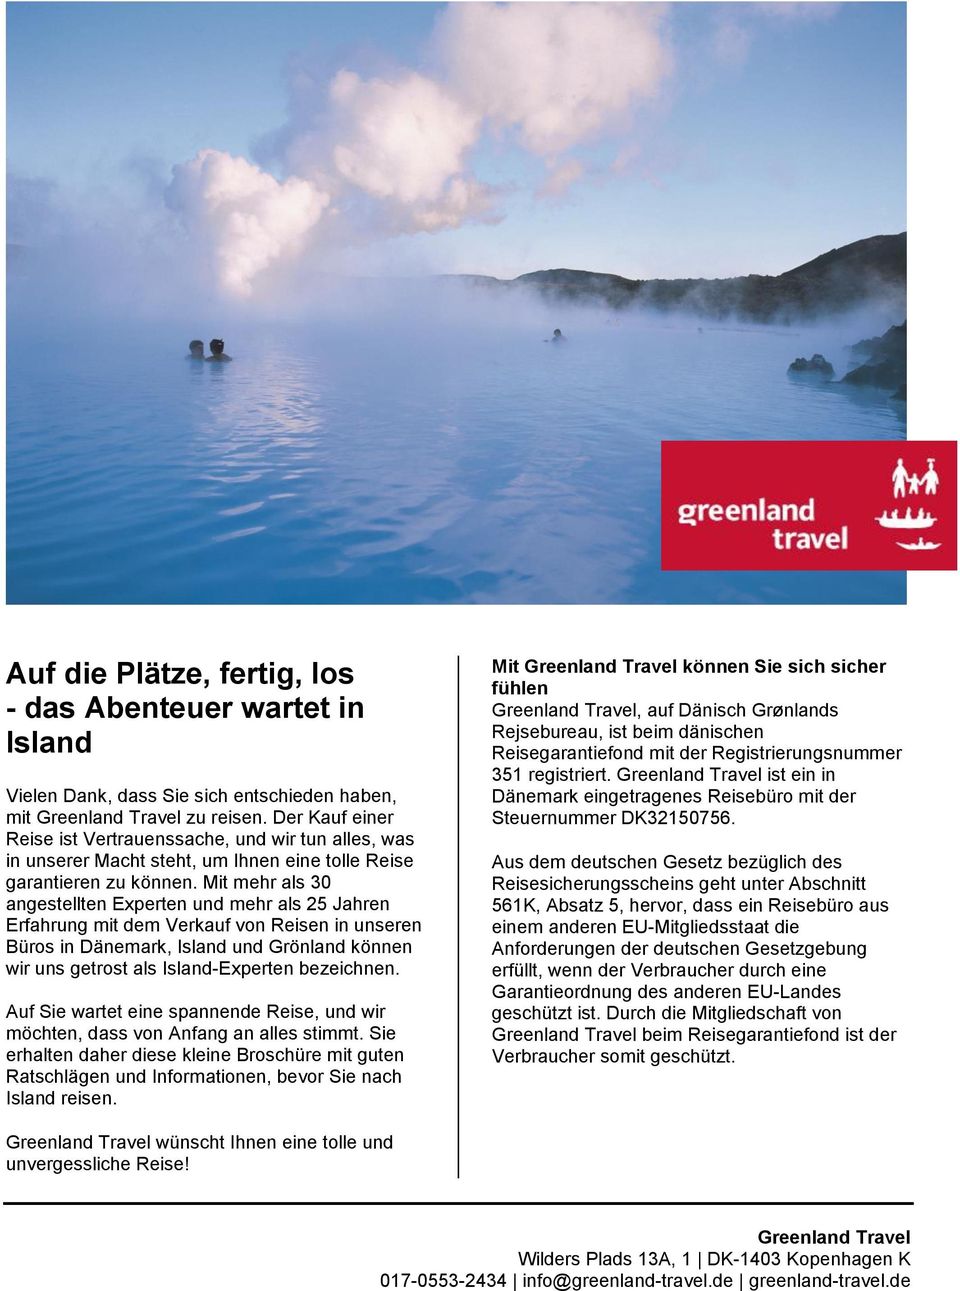 Mit mehr als 30 angestellten Experten und mehr als 25 Jahren Erfahrung mit dem Verkauf von Reisen in unseren Büros in Dänemark, Island und Grönland können wir uns getrost als Island-Experten